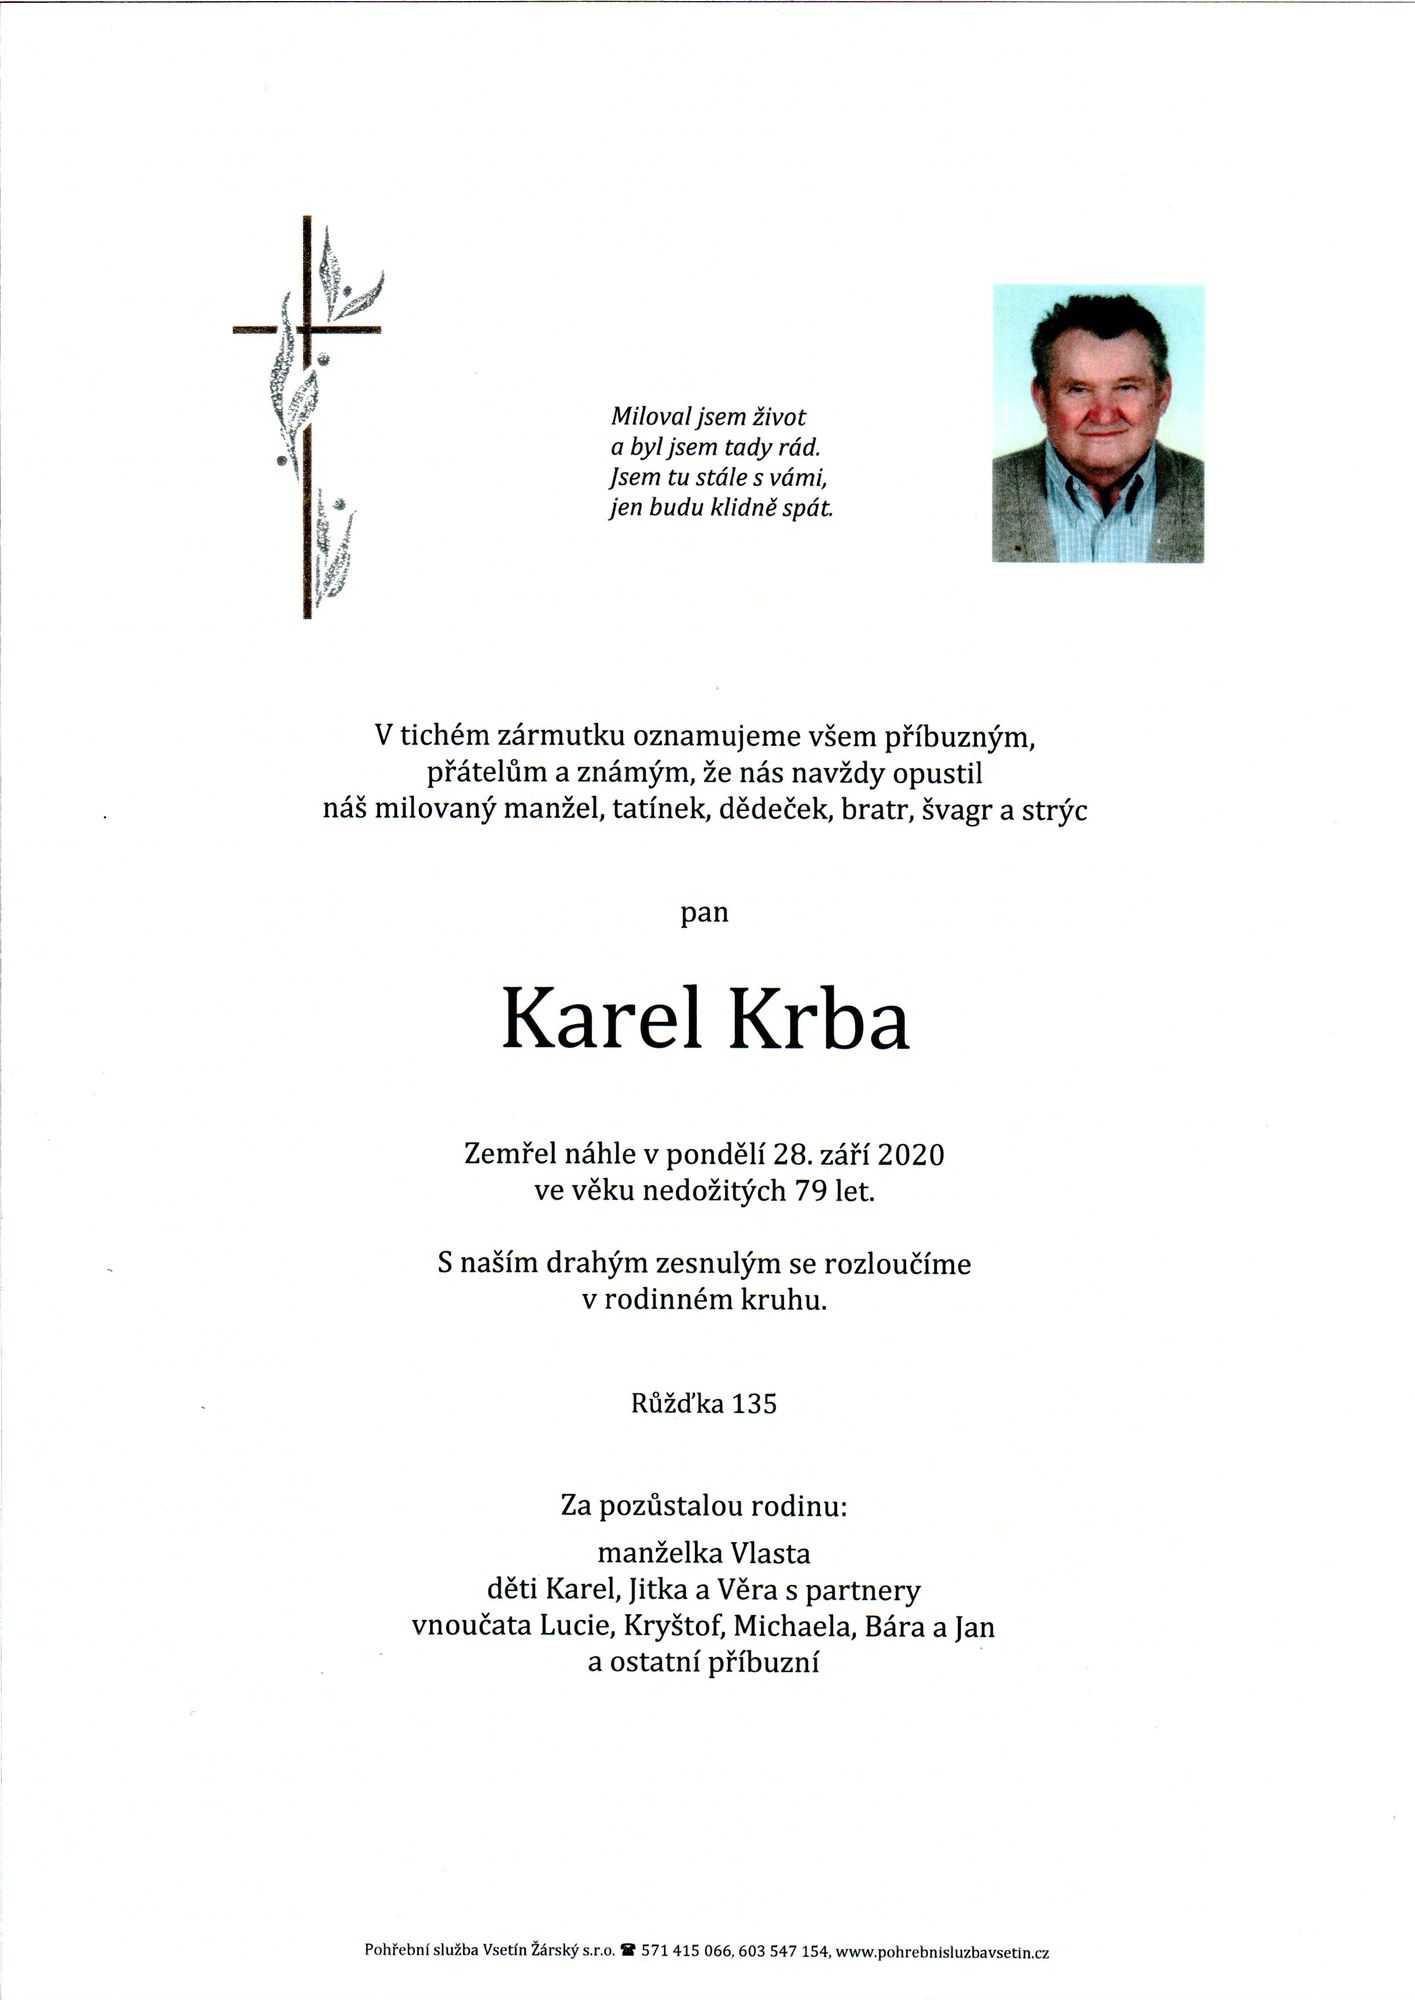 Karel Krba